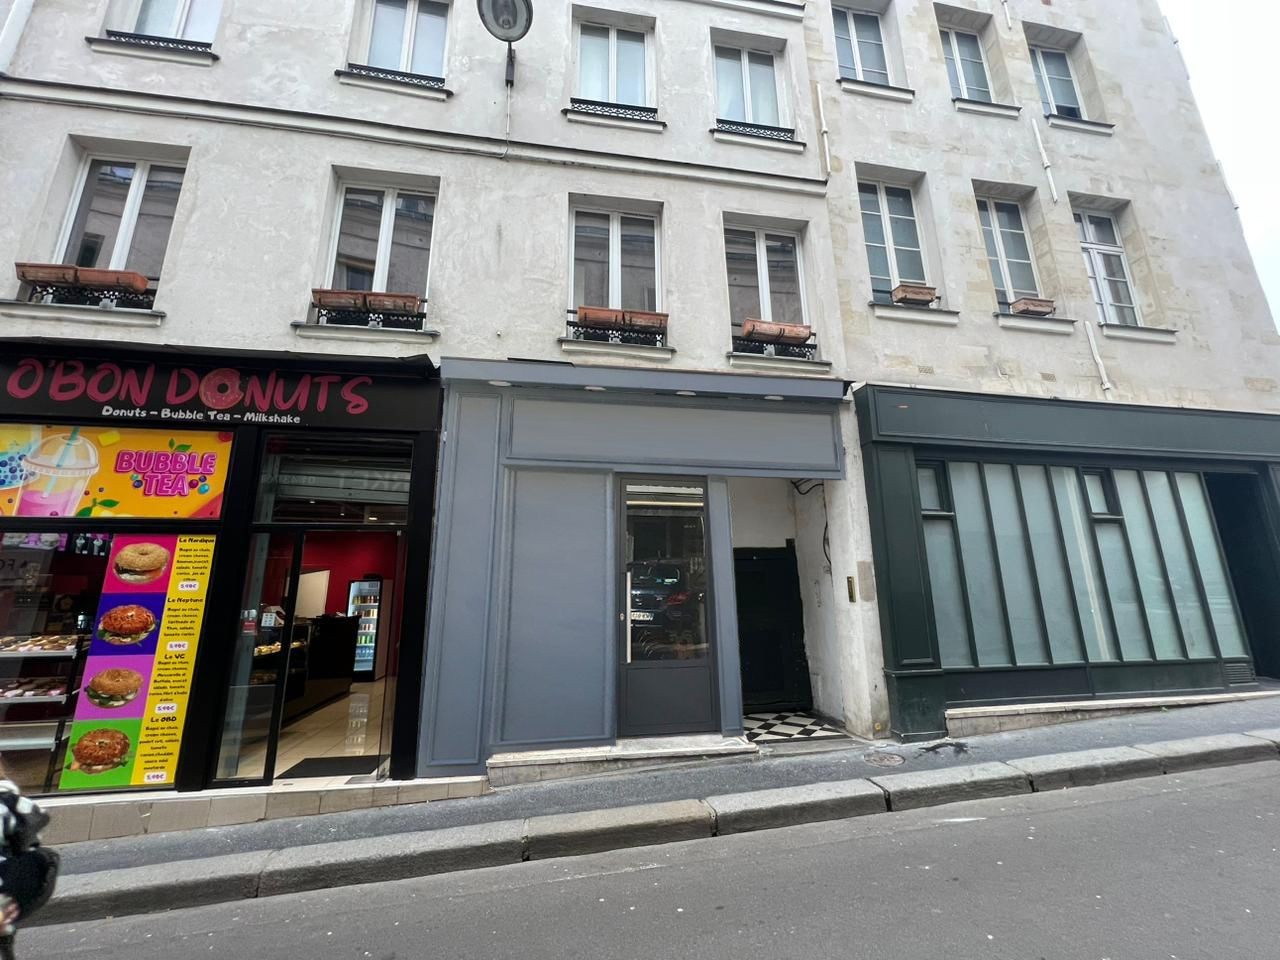 Location Bureau / Commerce à Paris Panthéon 5e arrondissement 2 pièces